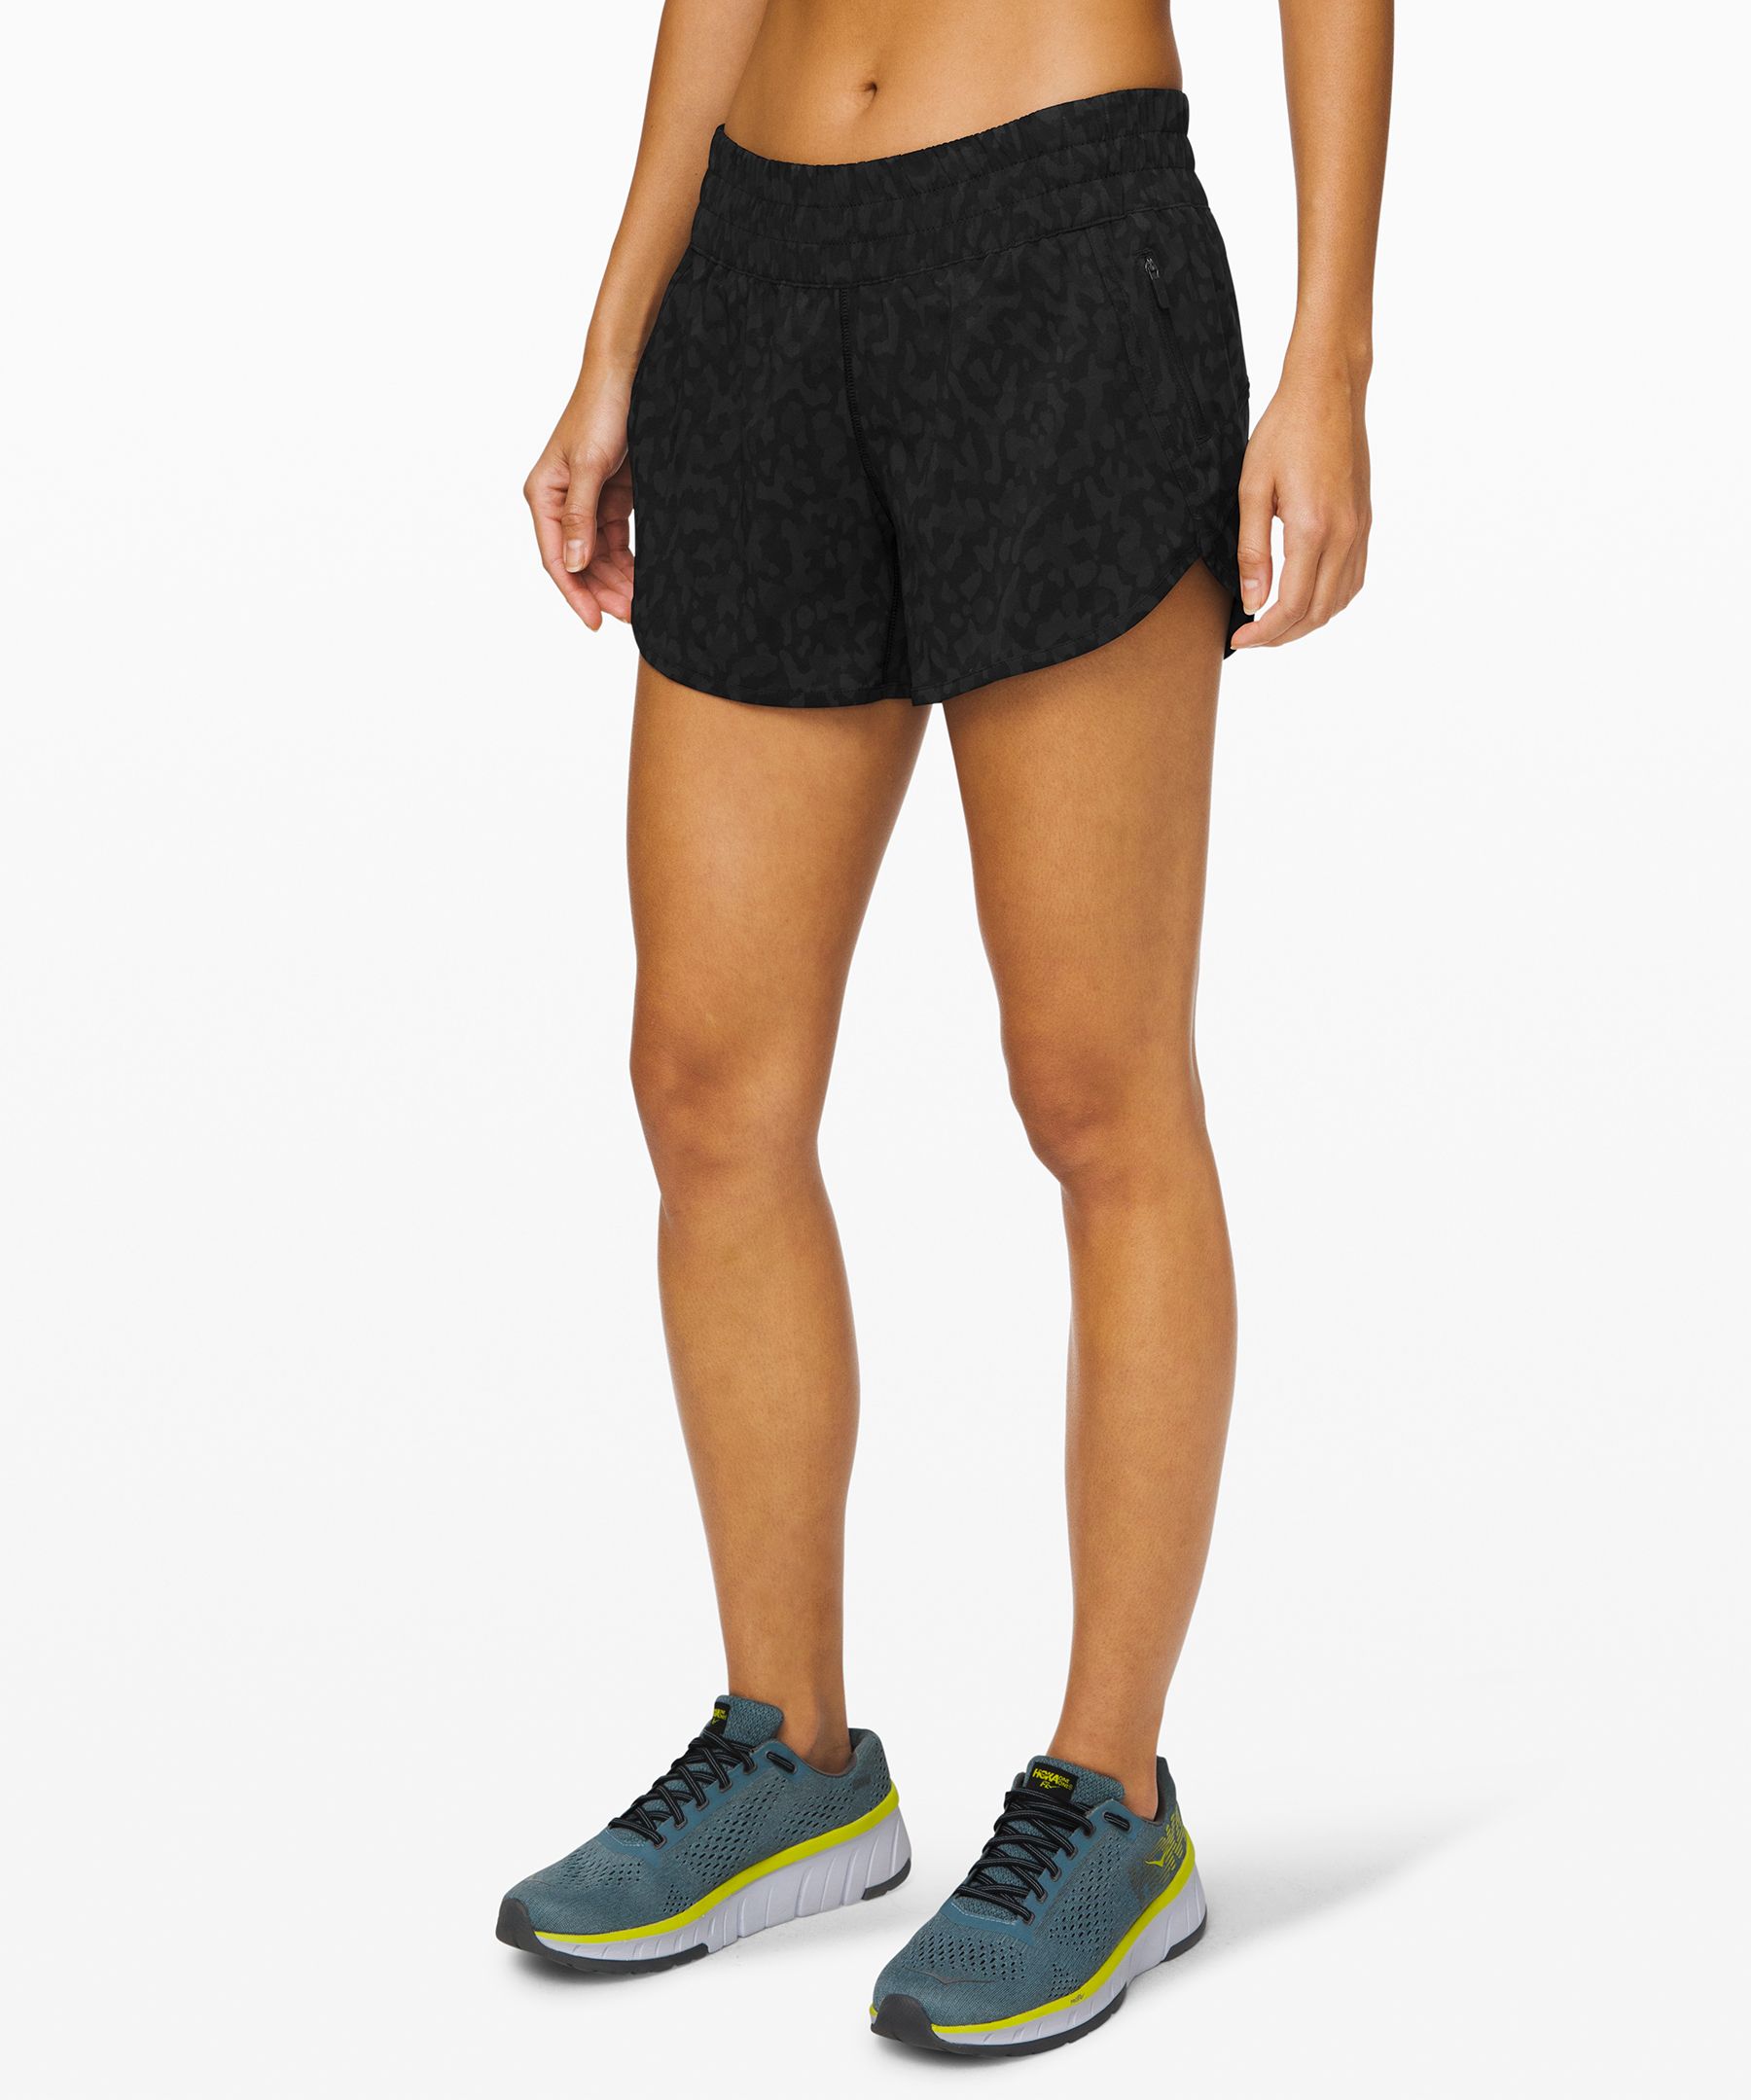 lululemon women's running shorts